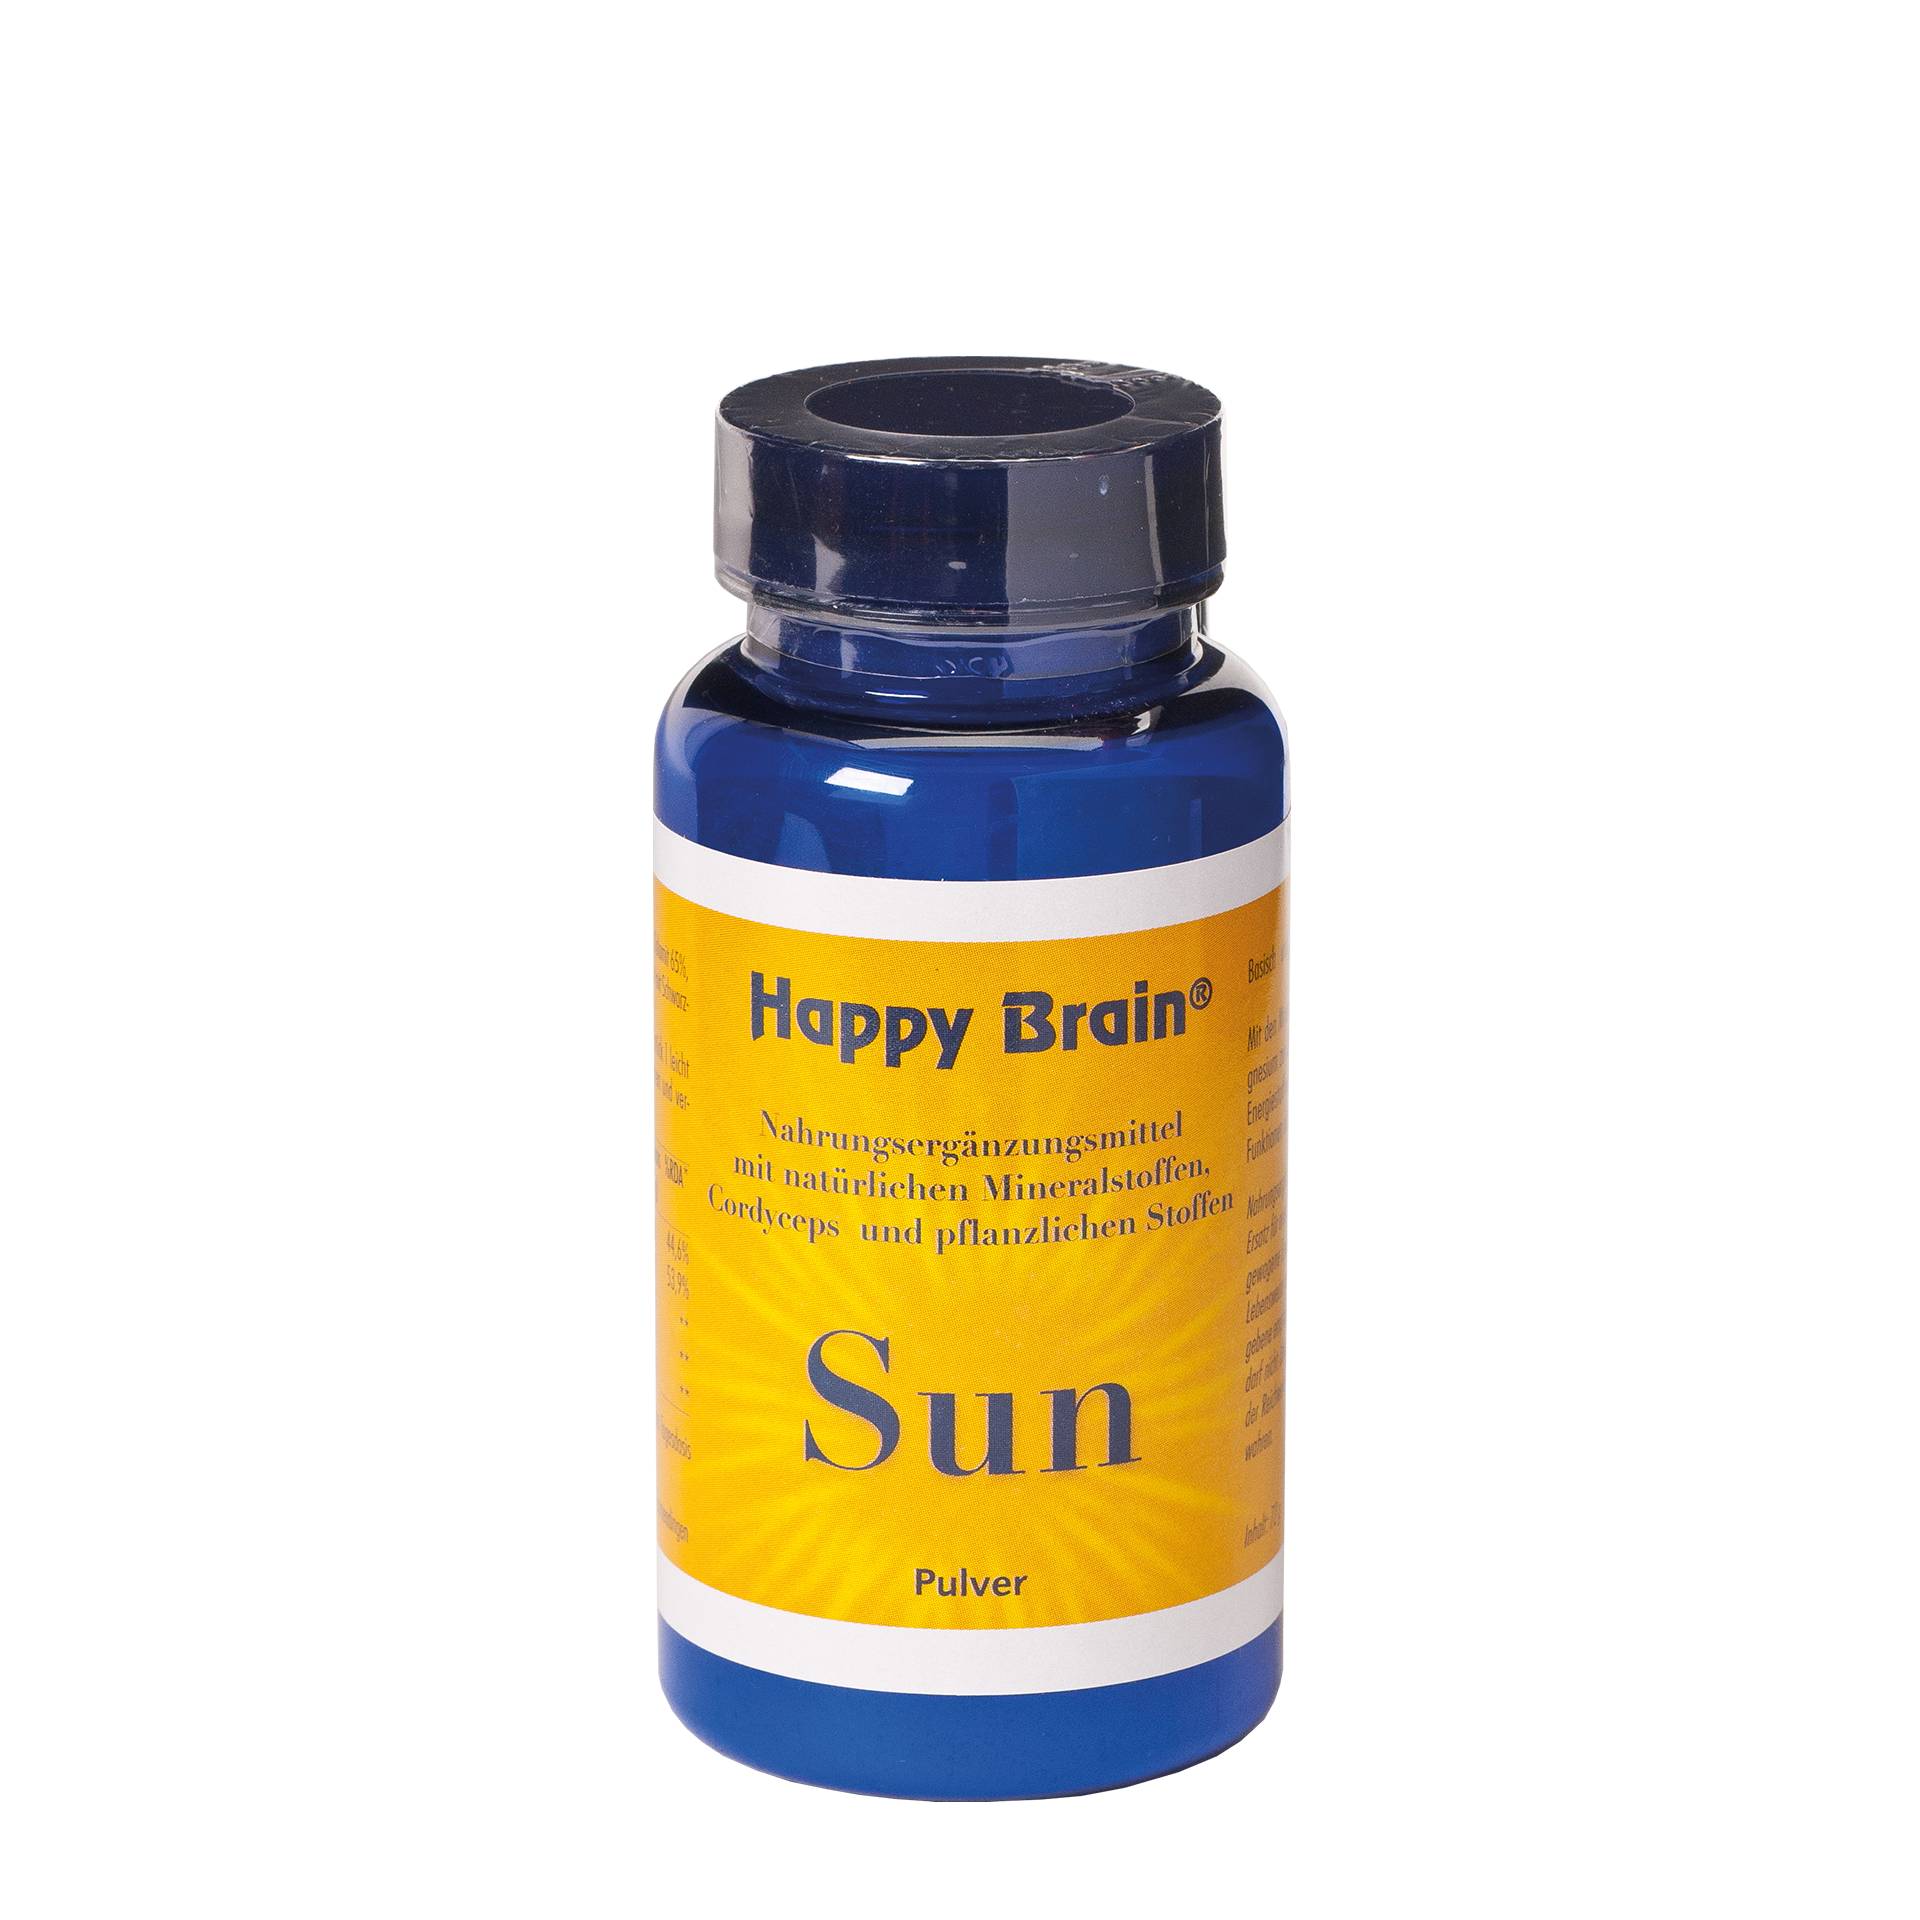 Happy Brain Sun, 72 g Pulver von Amrita